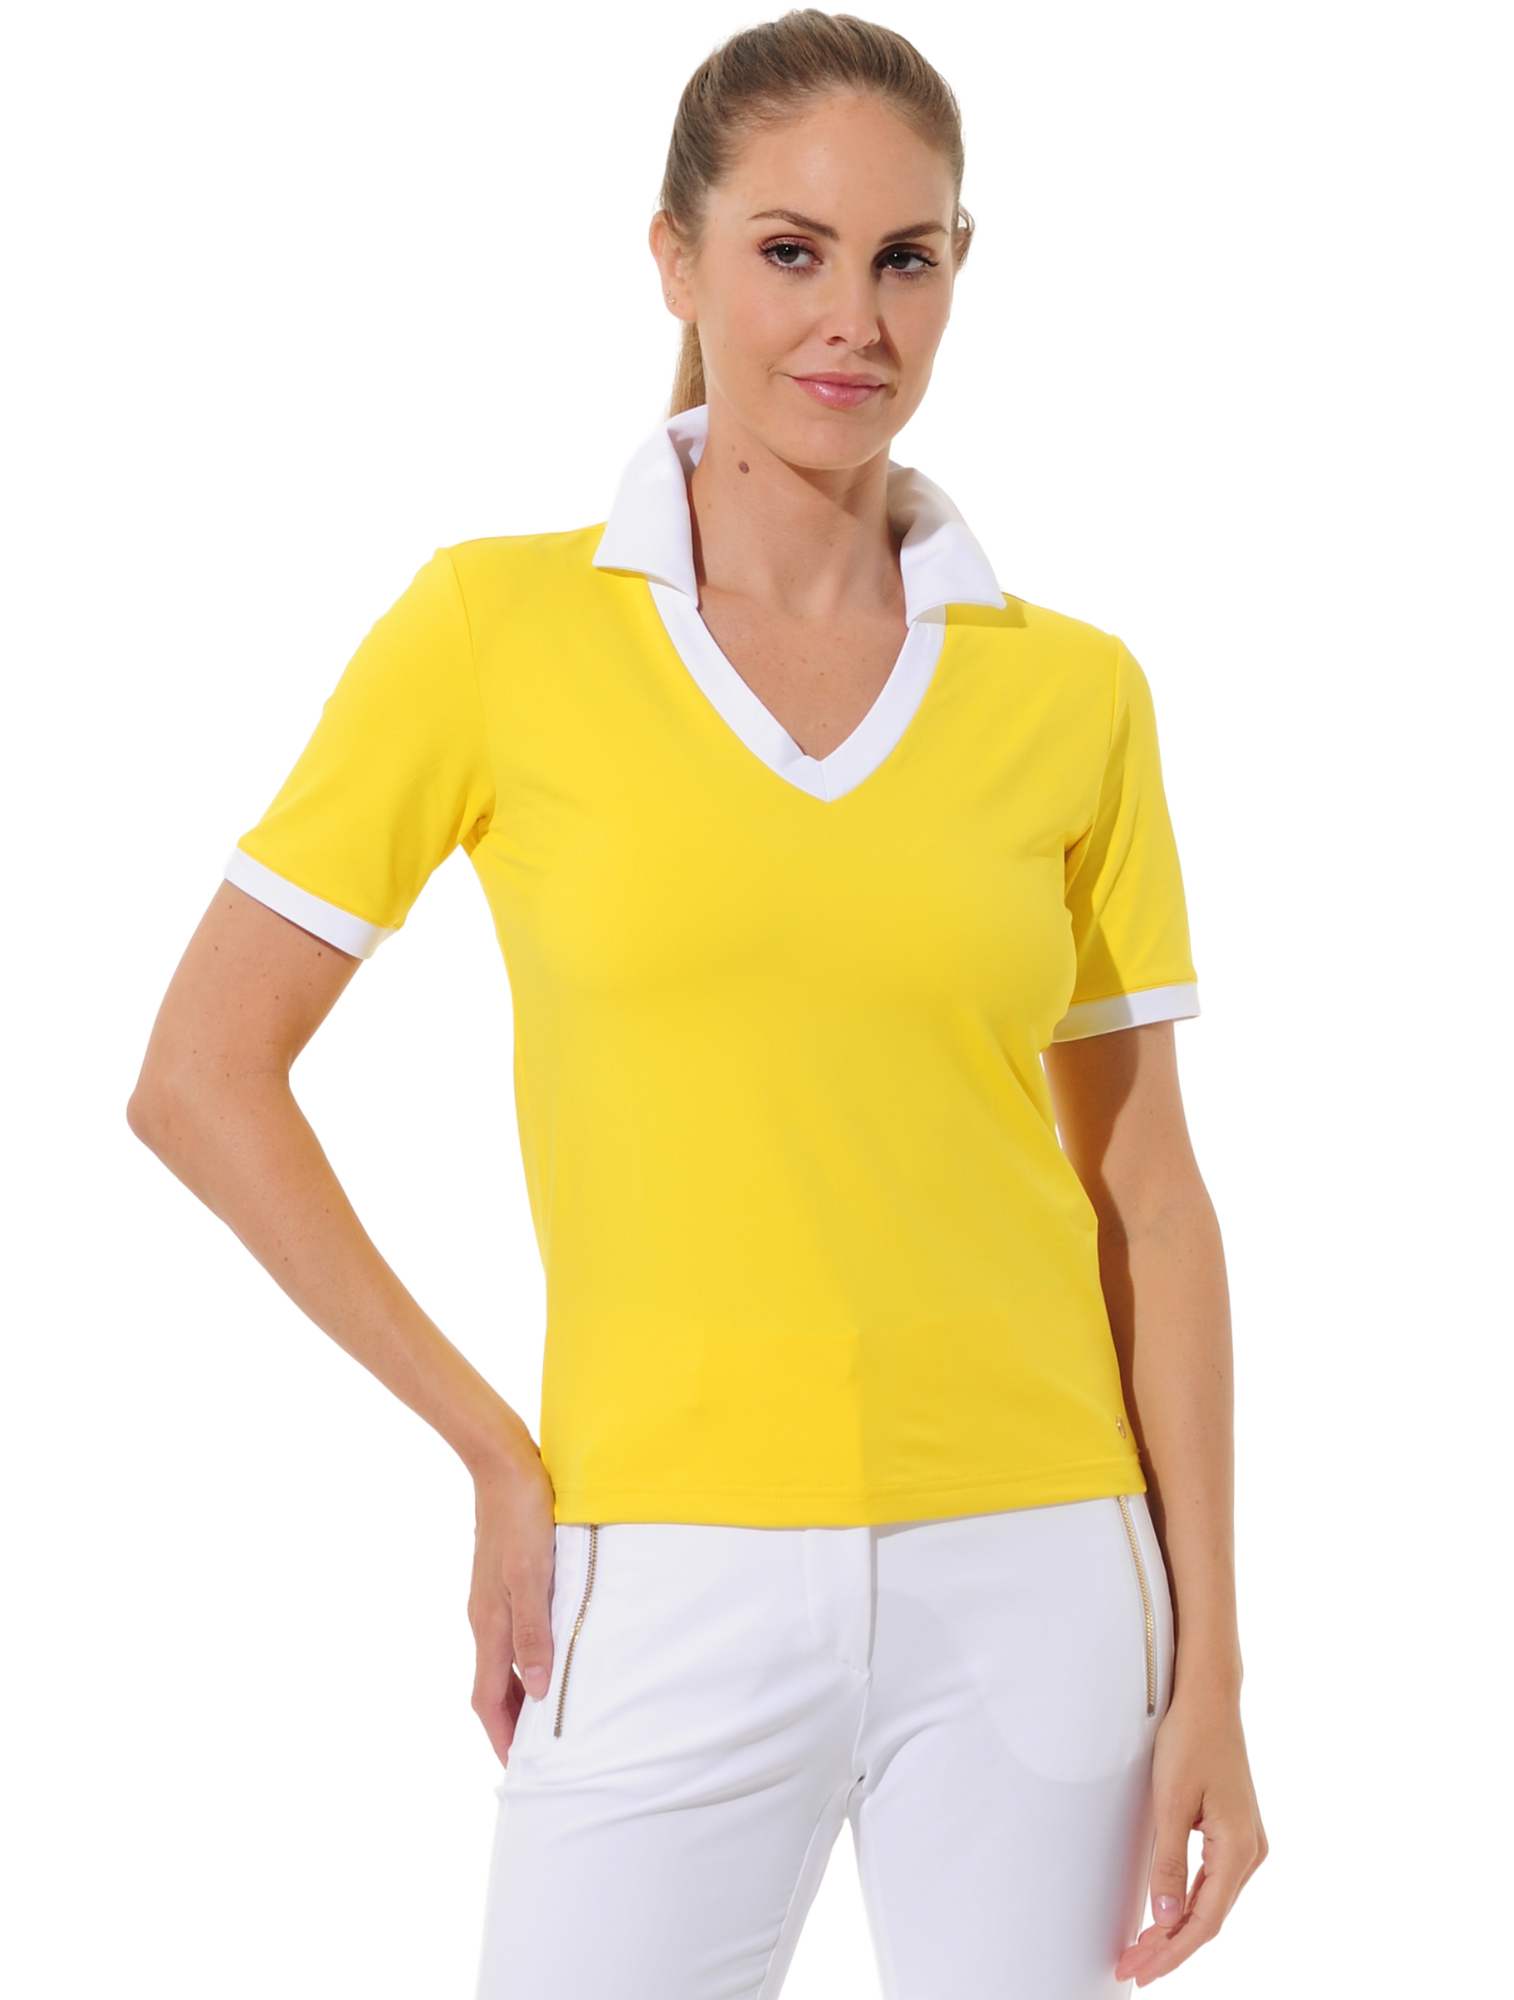 Jersey golf polo shirt sun